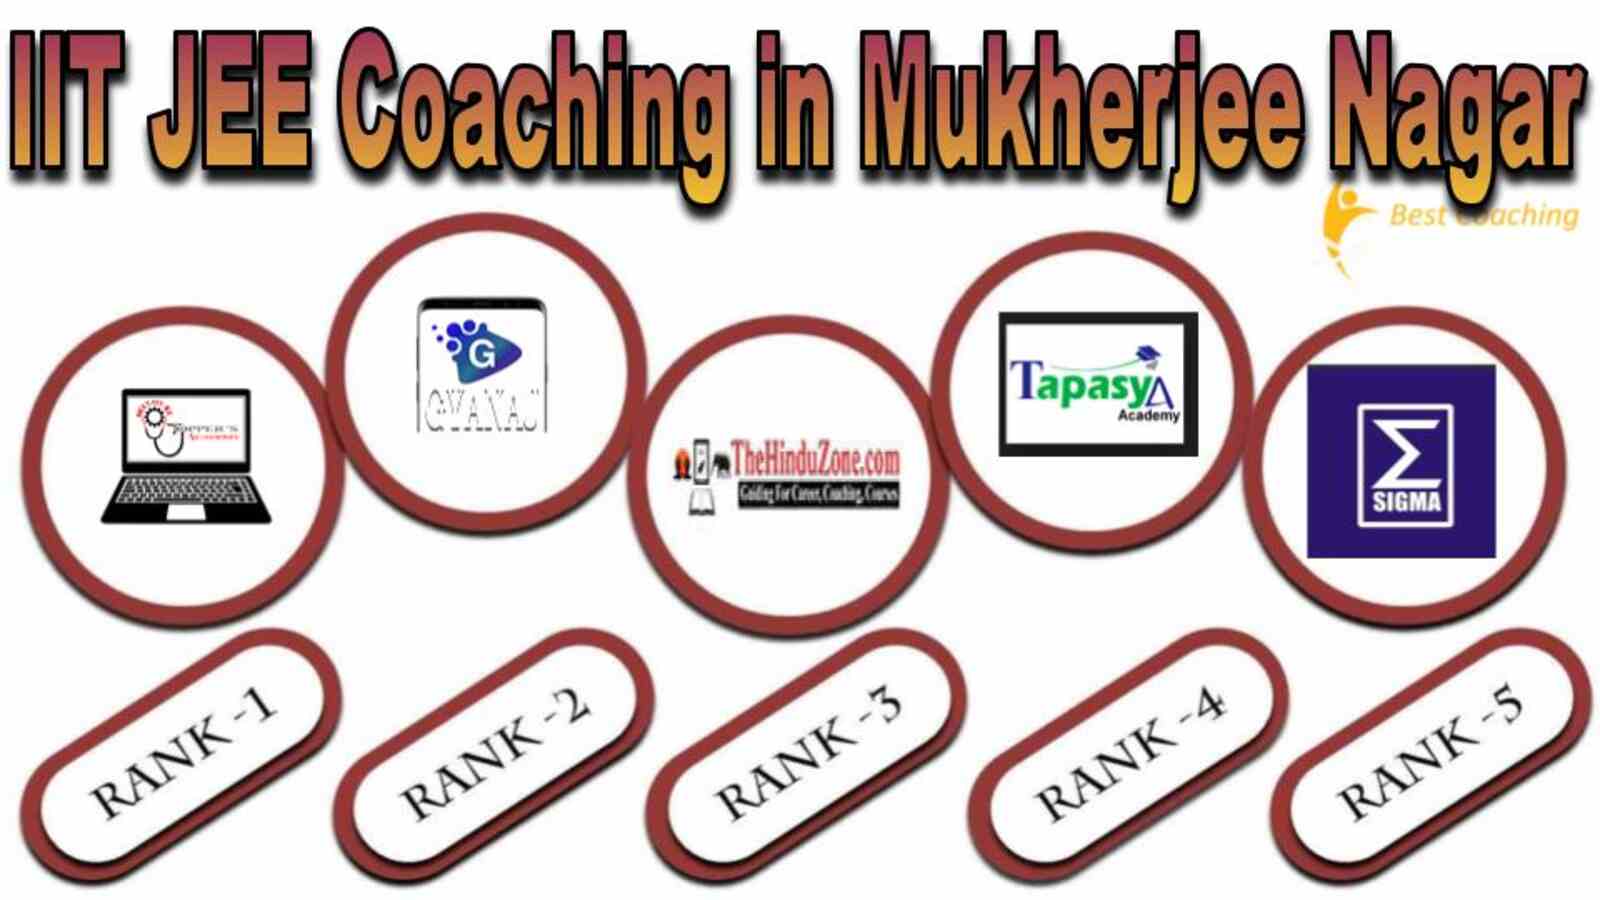 IIT JEE Coaching in Mukherjee Nagar